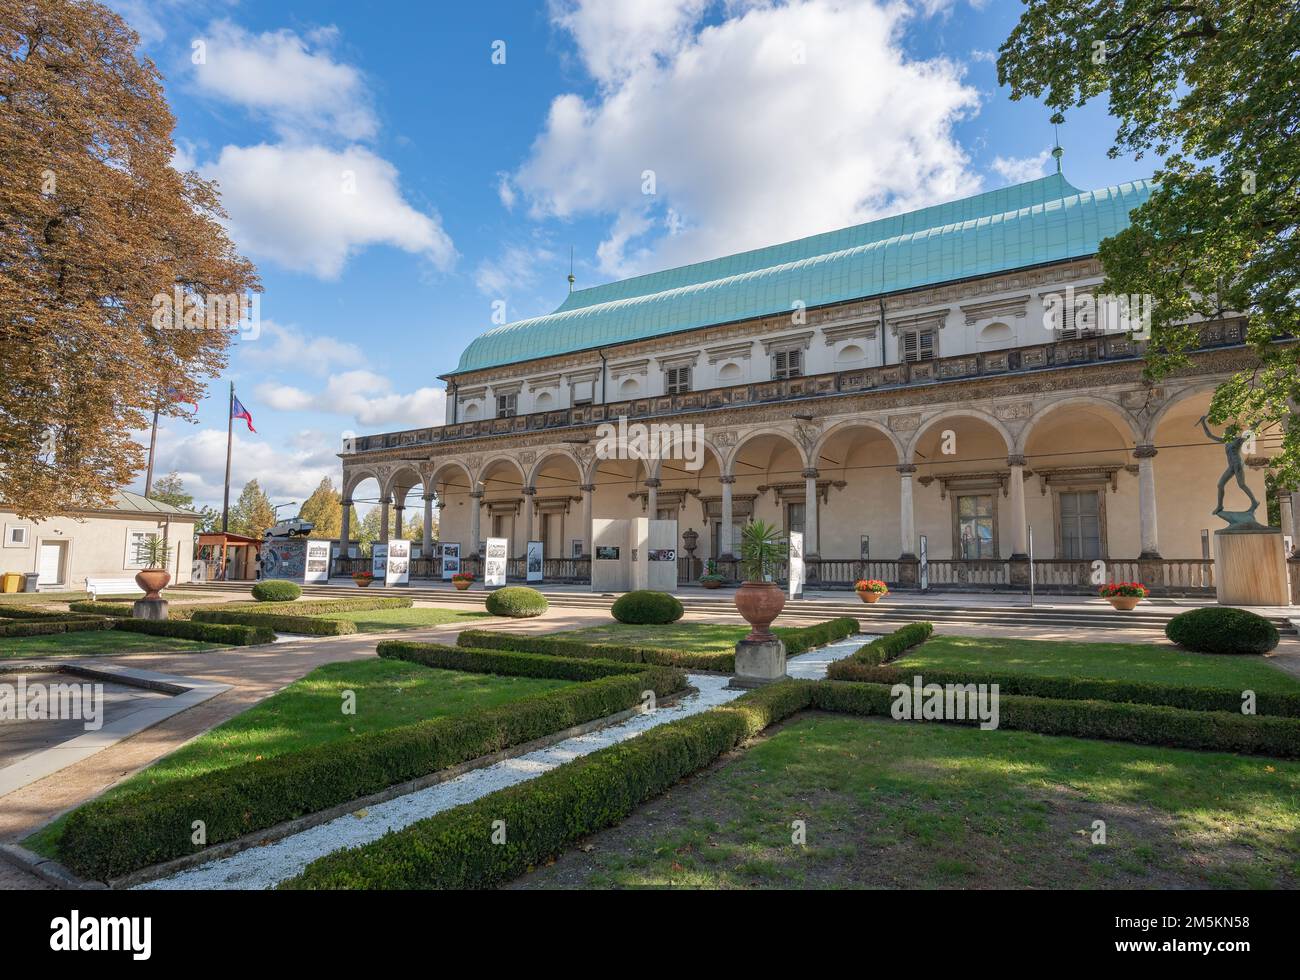 Sommerpalast Queen Annes im Königlichen Garten der Prager Burg - Prag, Tschechische Republik Stockfoto